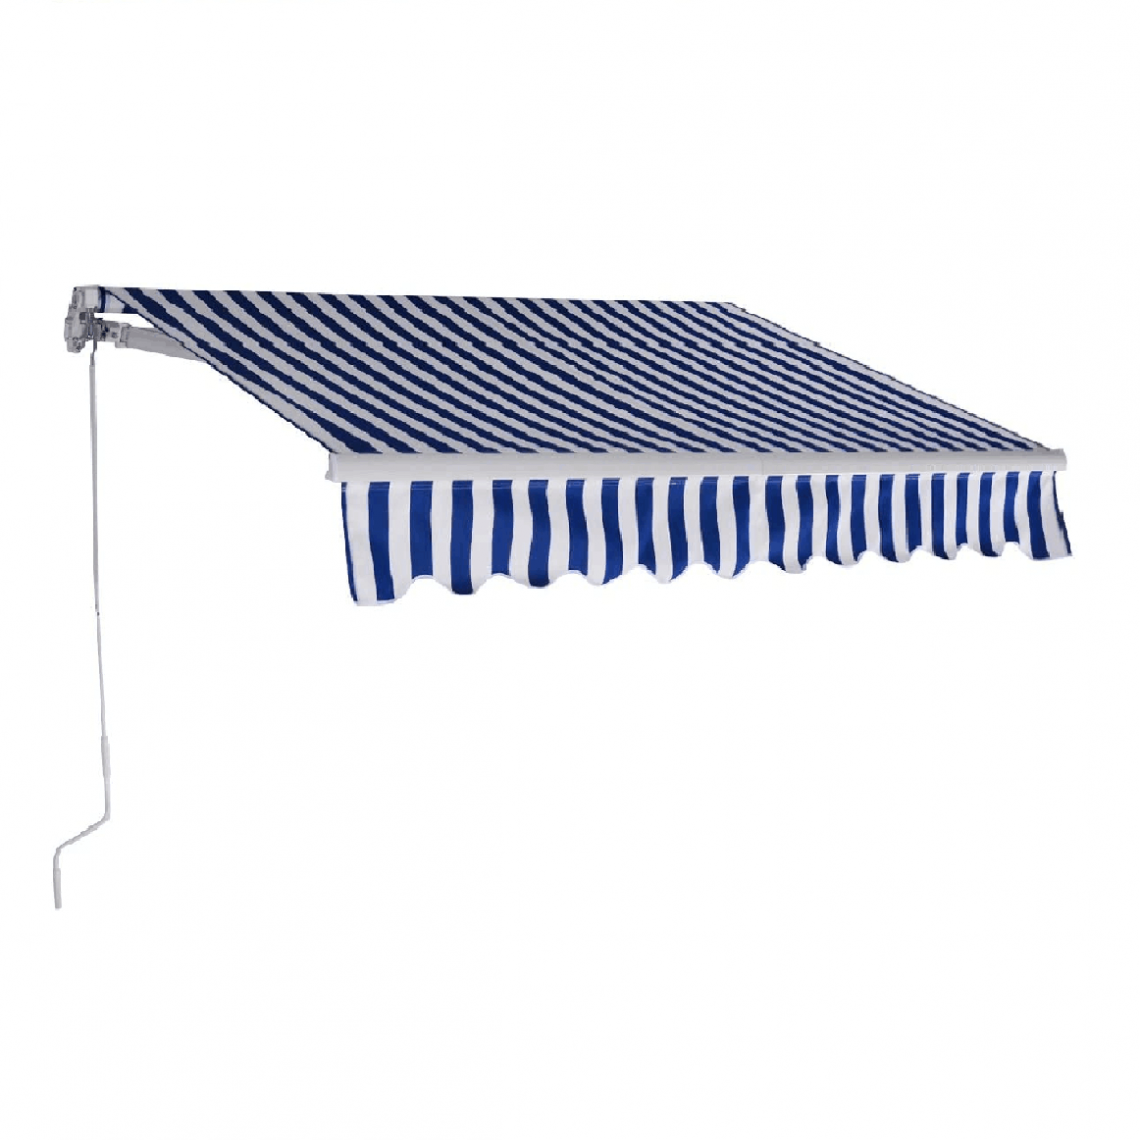 Helloshop26 - Store banne rétractable 3 x 2 5m avec tissu résistant aux UV et à l'eau cadre en aluminium pour terrasse balcon bleu blanc 20_0001111 - Store banne